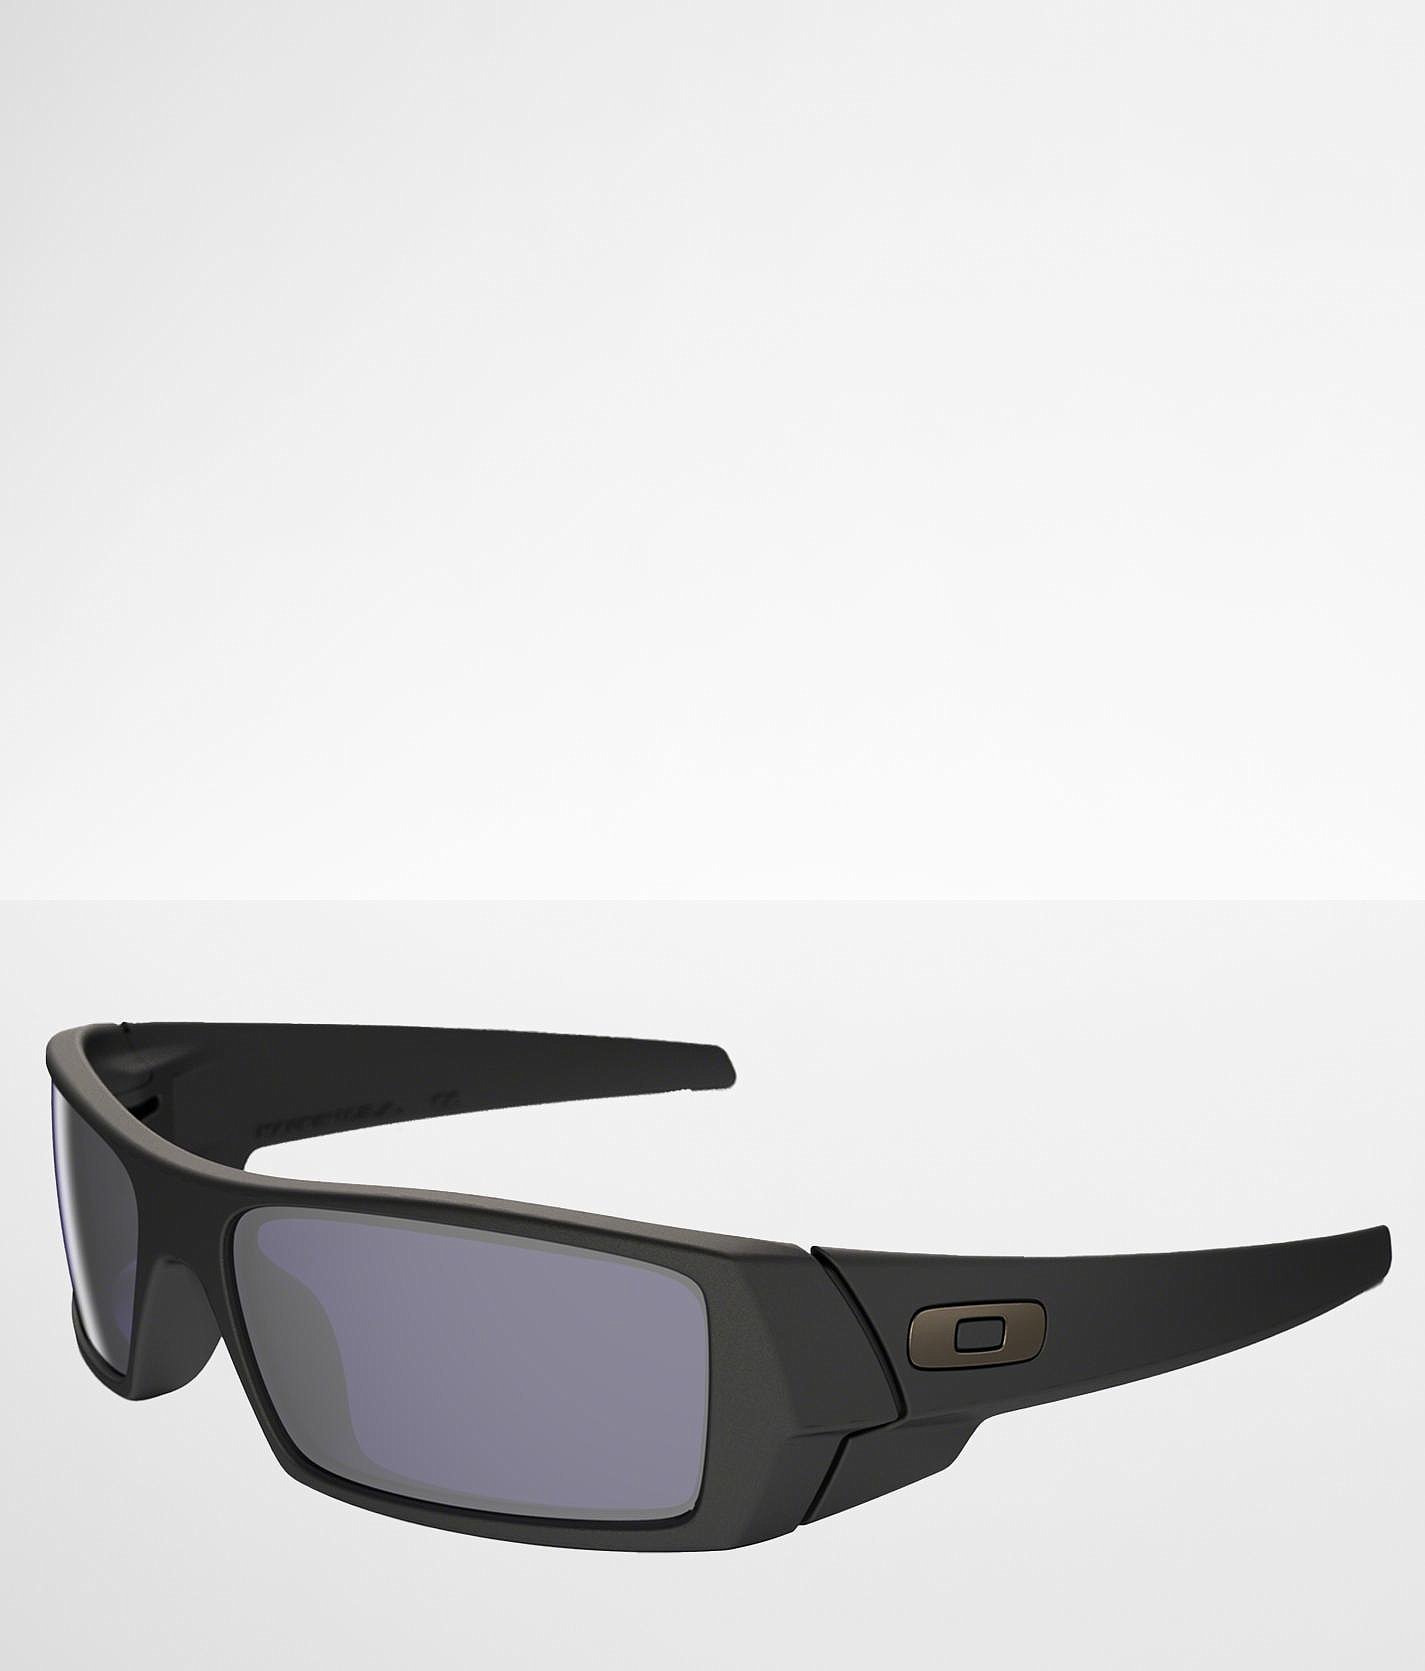 gascan sunglasses